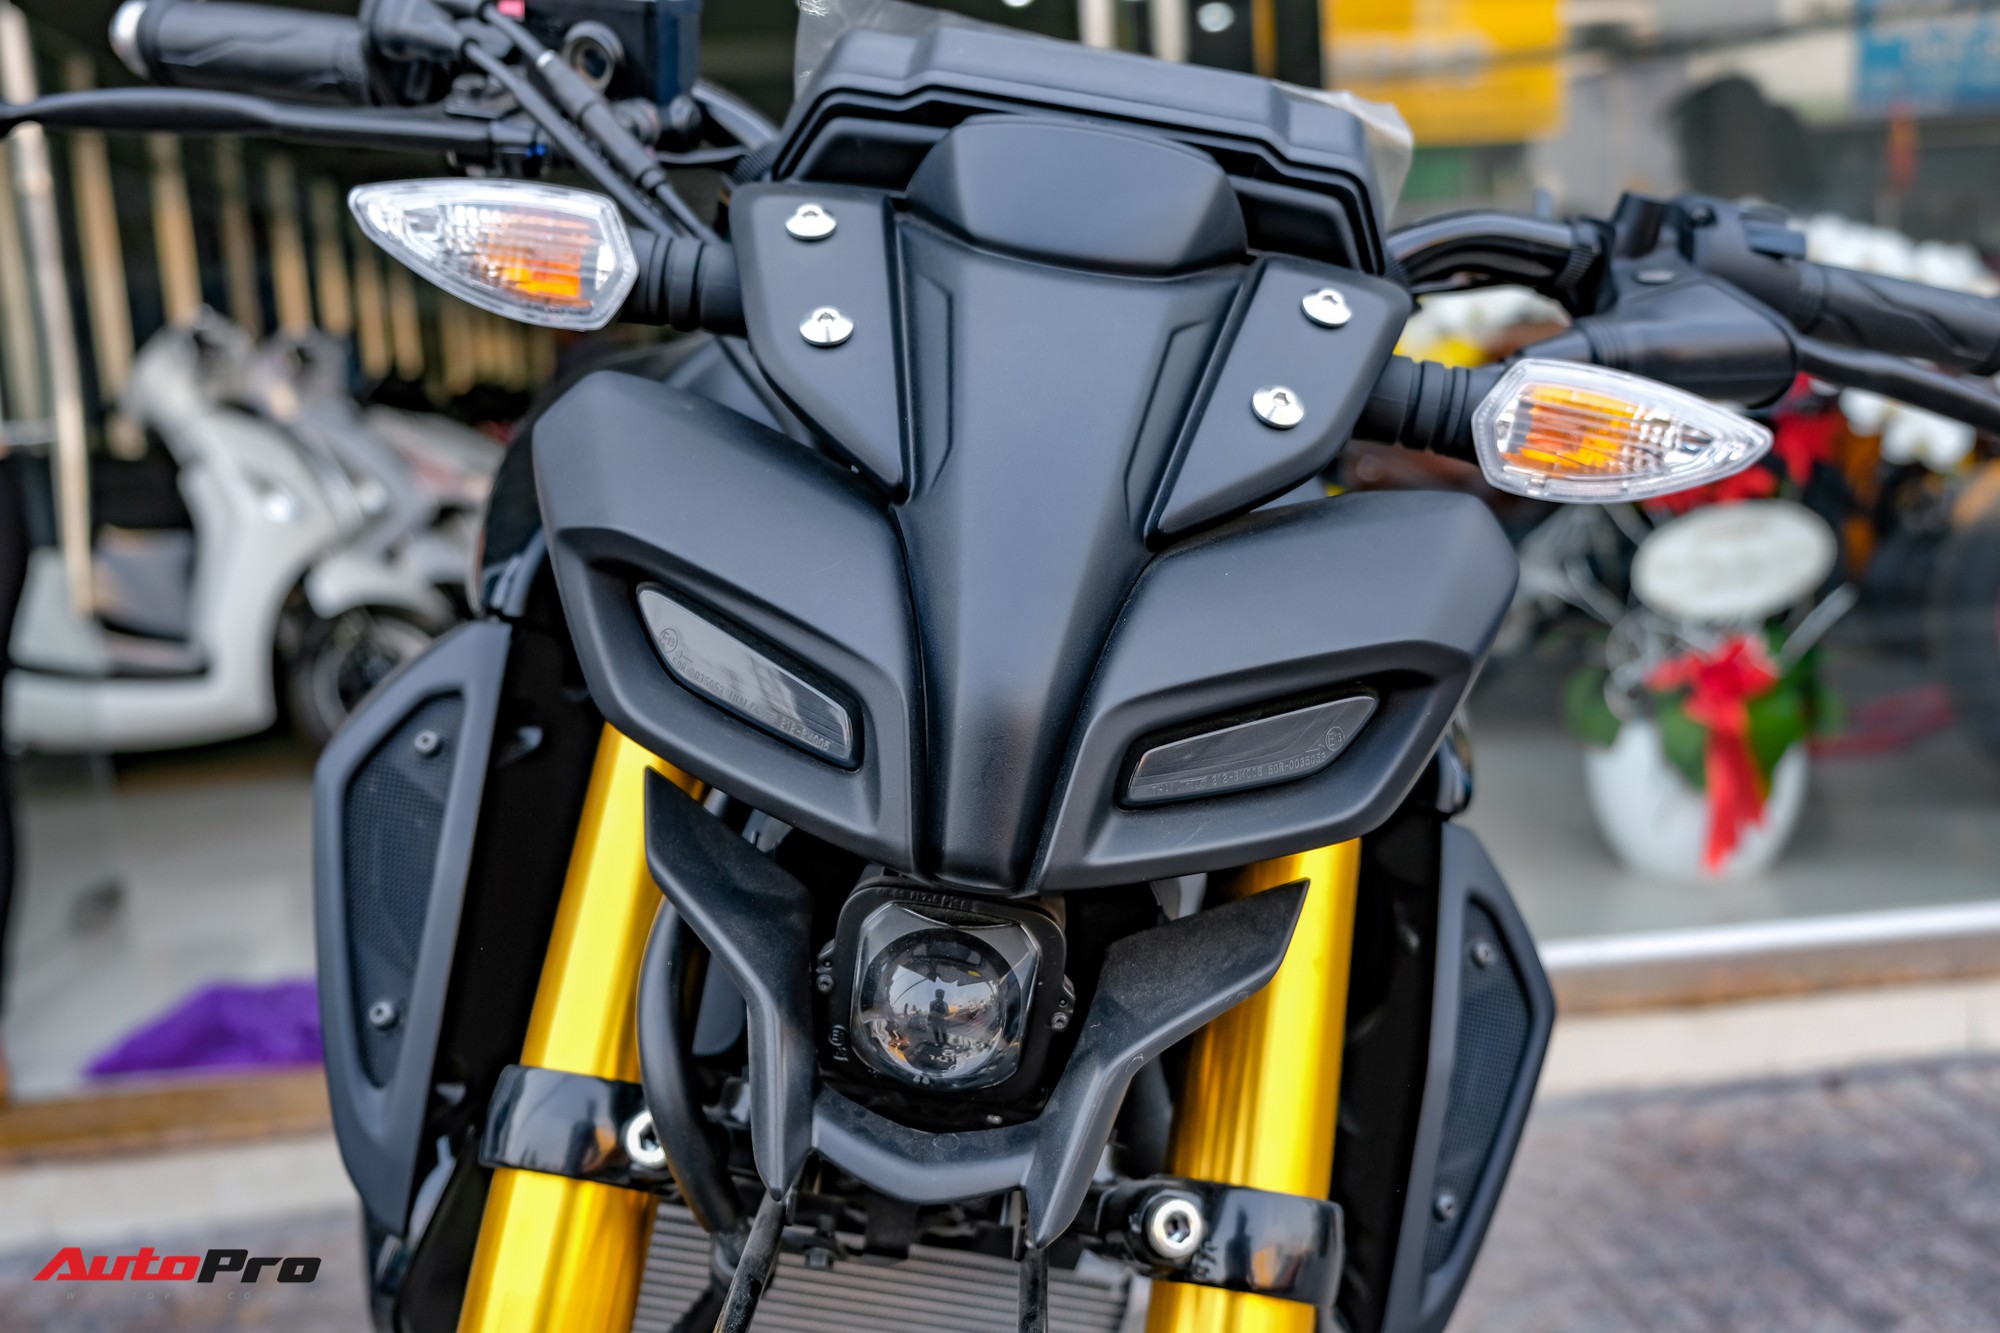 Yamaha âm thầm ra mắt naked bike MT15 giá 57 triệu đồng